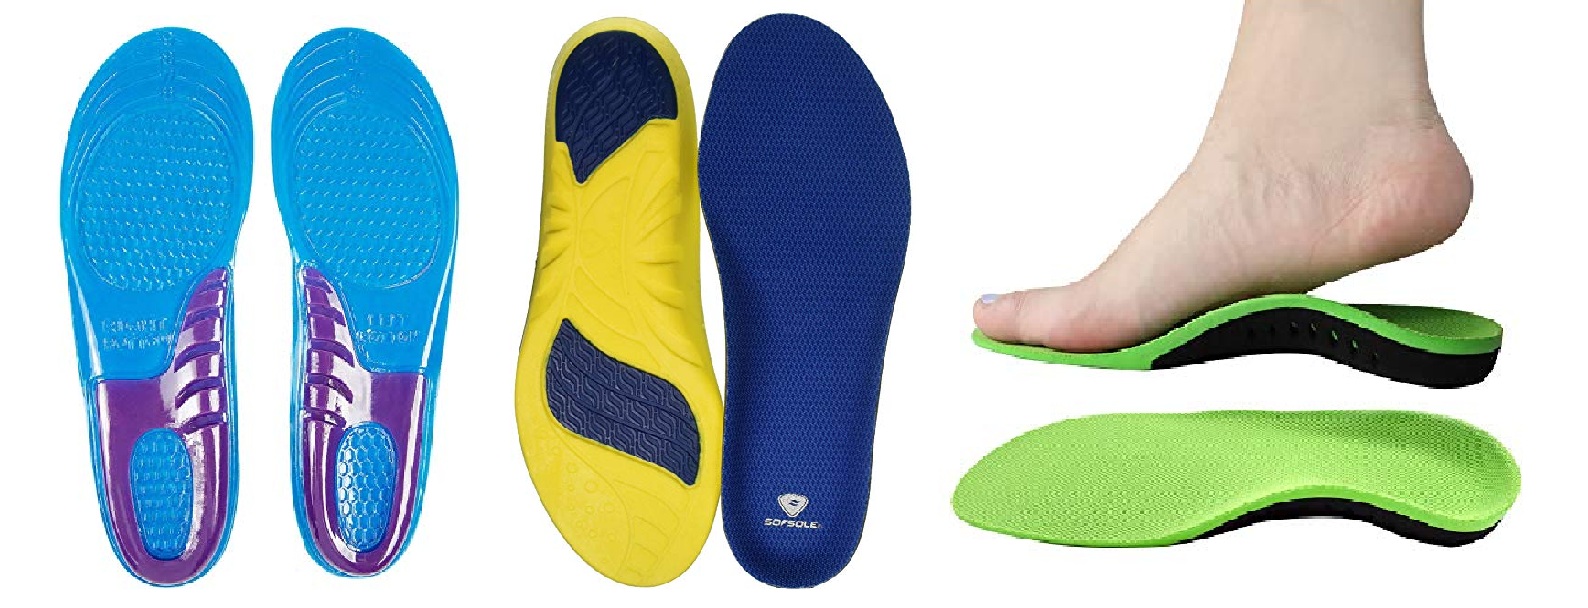 10 pares de pies Desechable Blanca Plantillas Cojines De Calzado Deportivo Permeable absorbente 